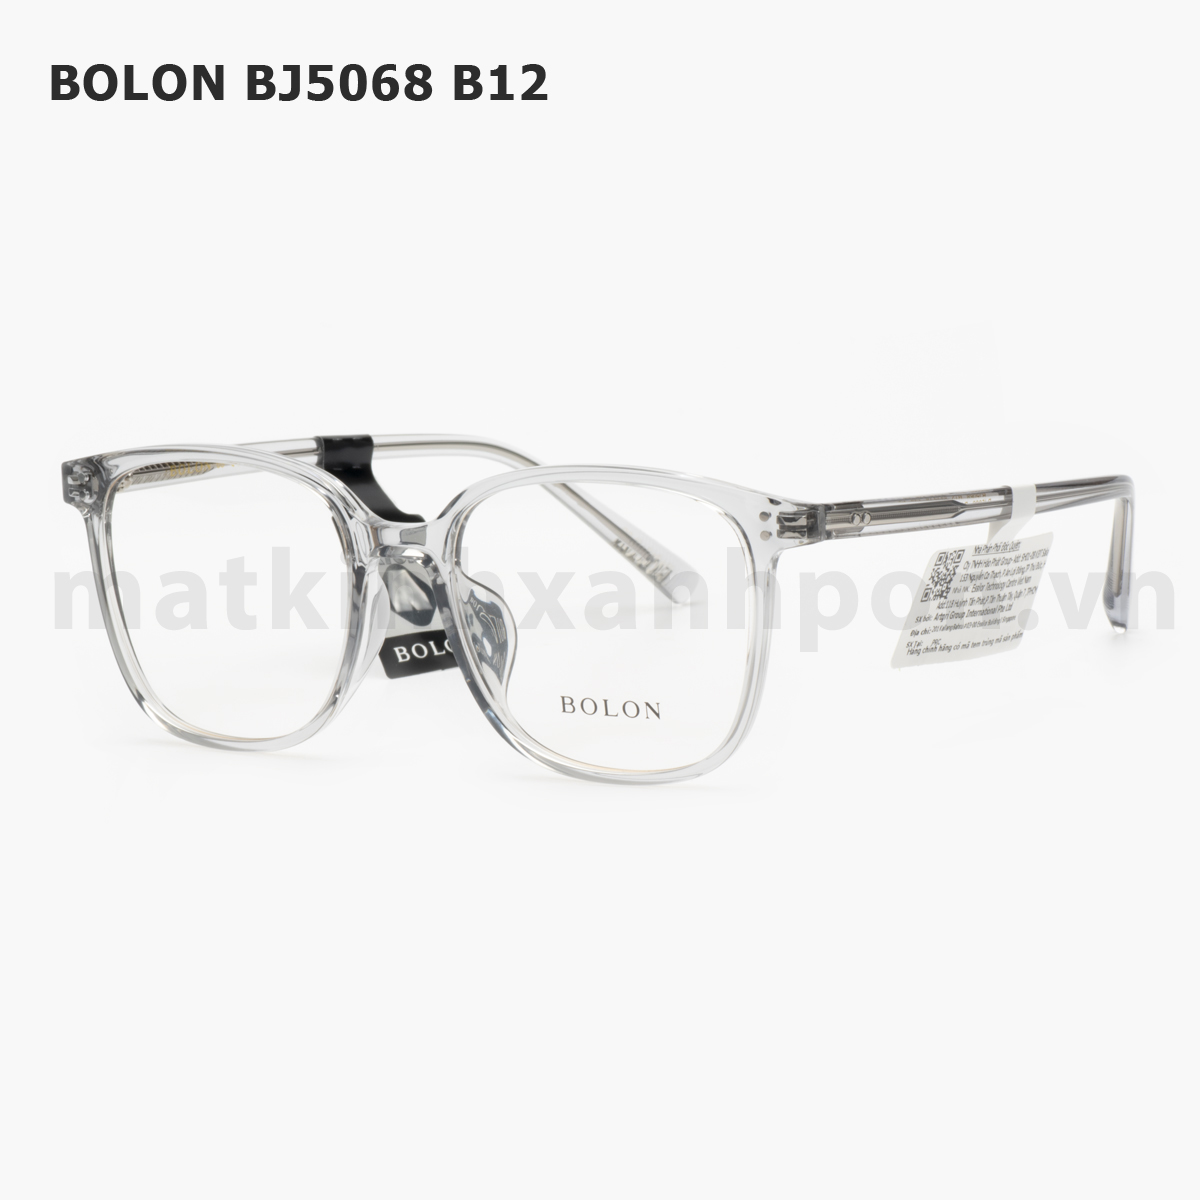 Bolon BJ5068 B12